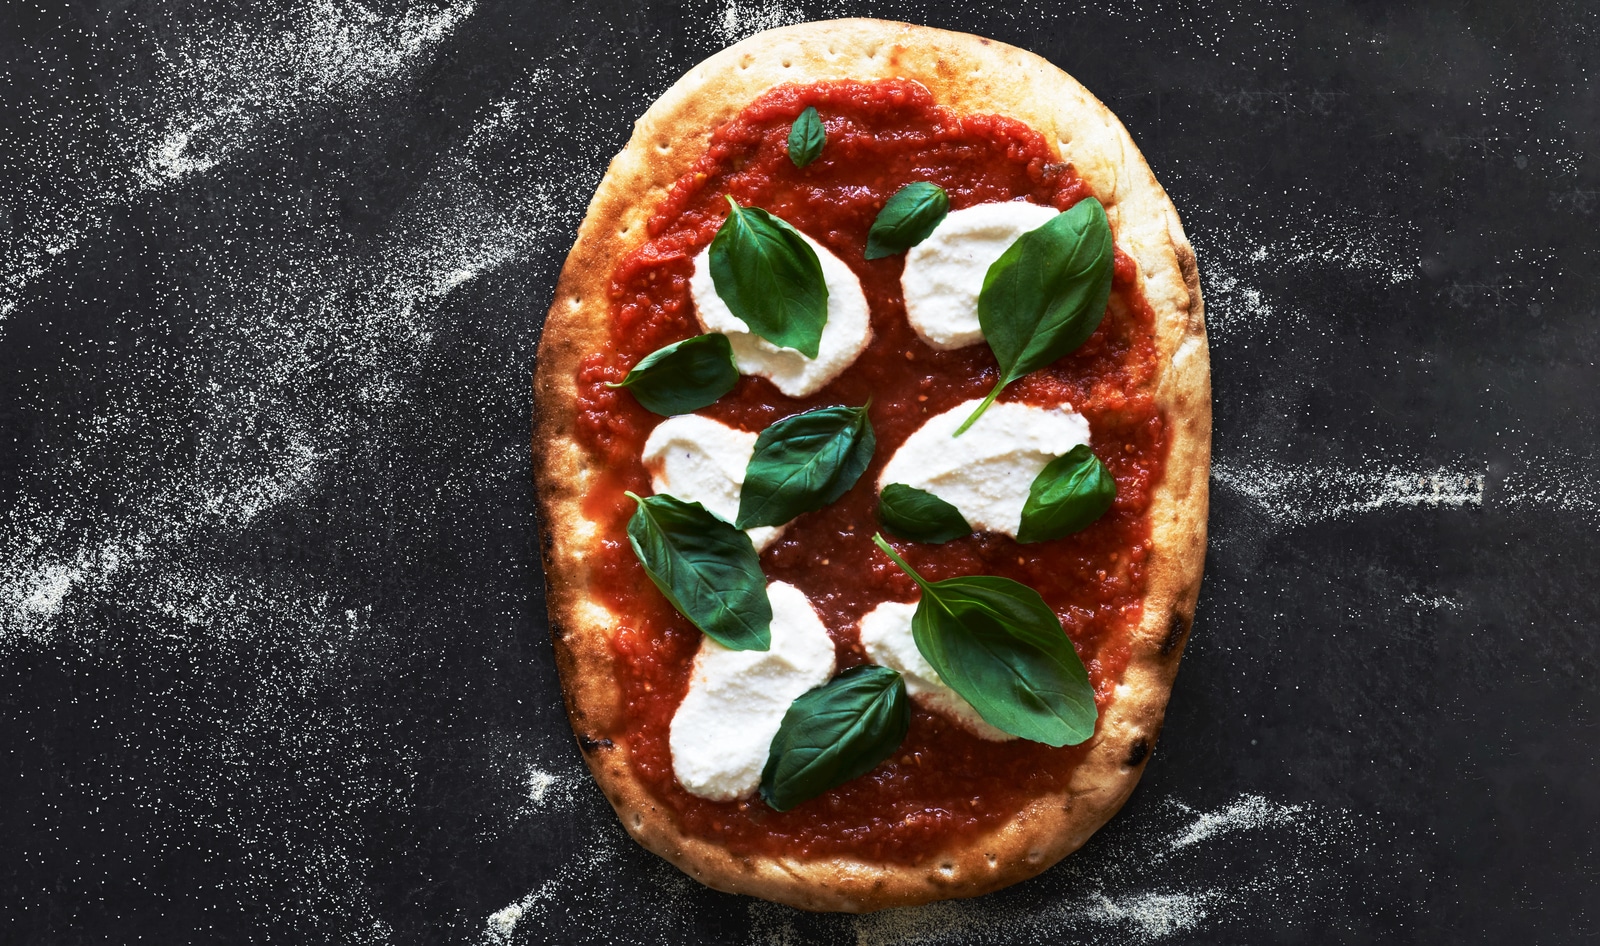 New York City Vegan Pizza Lands in Venice